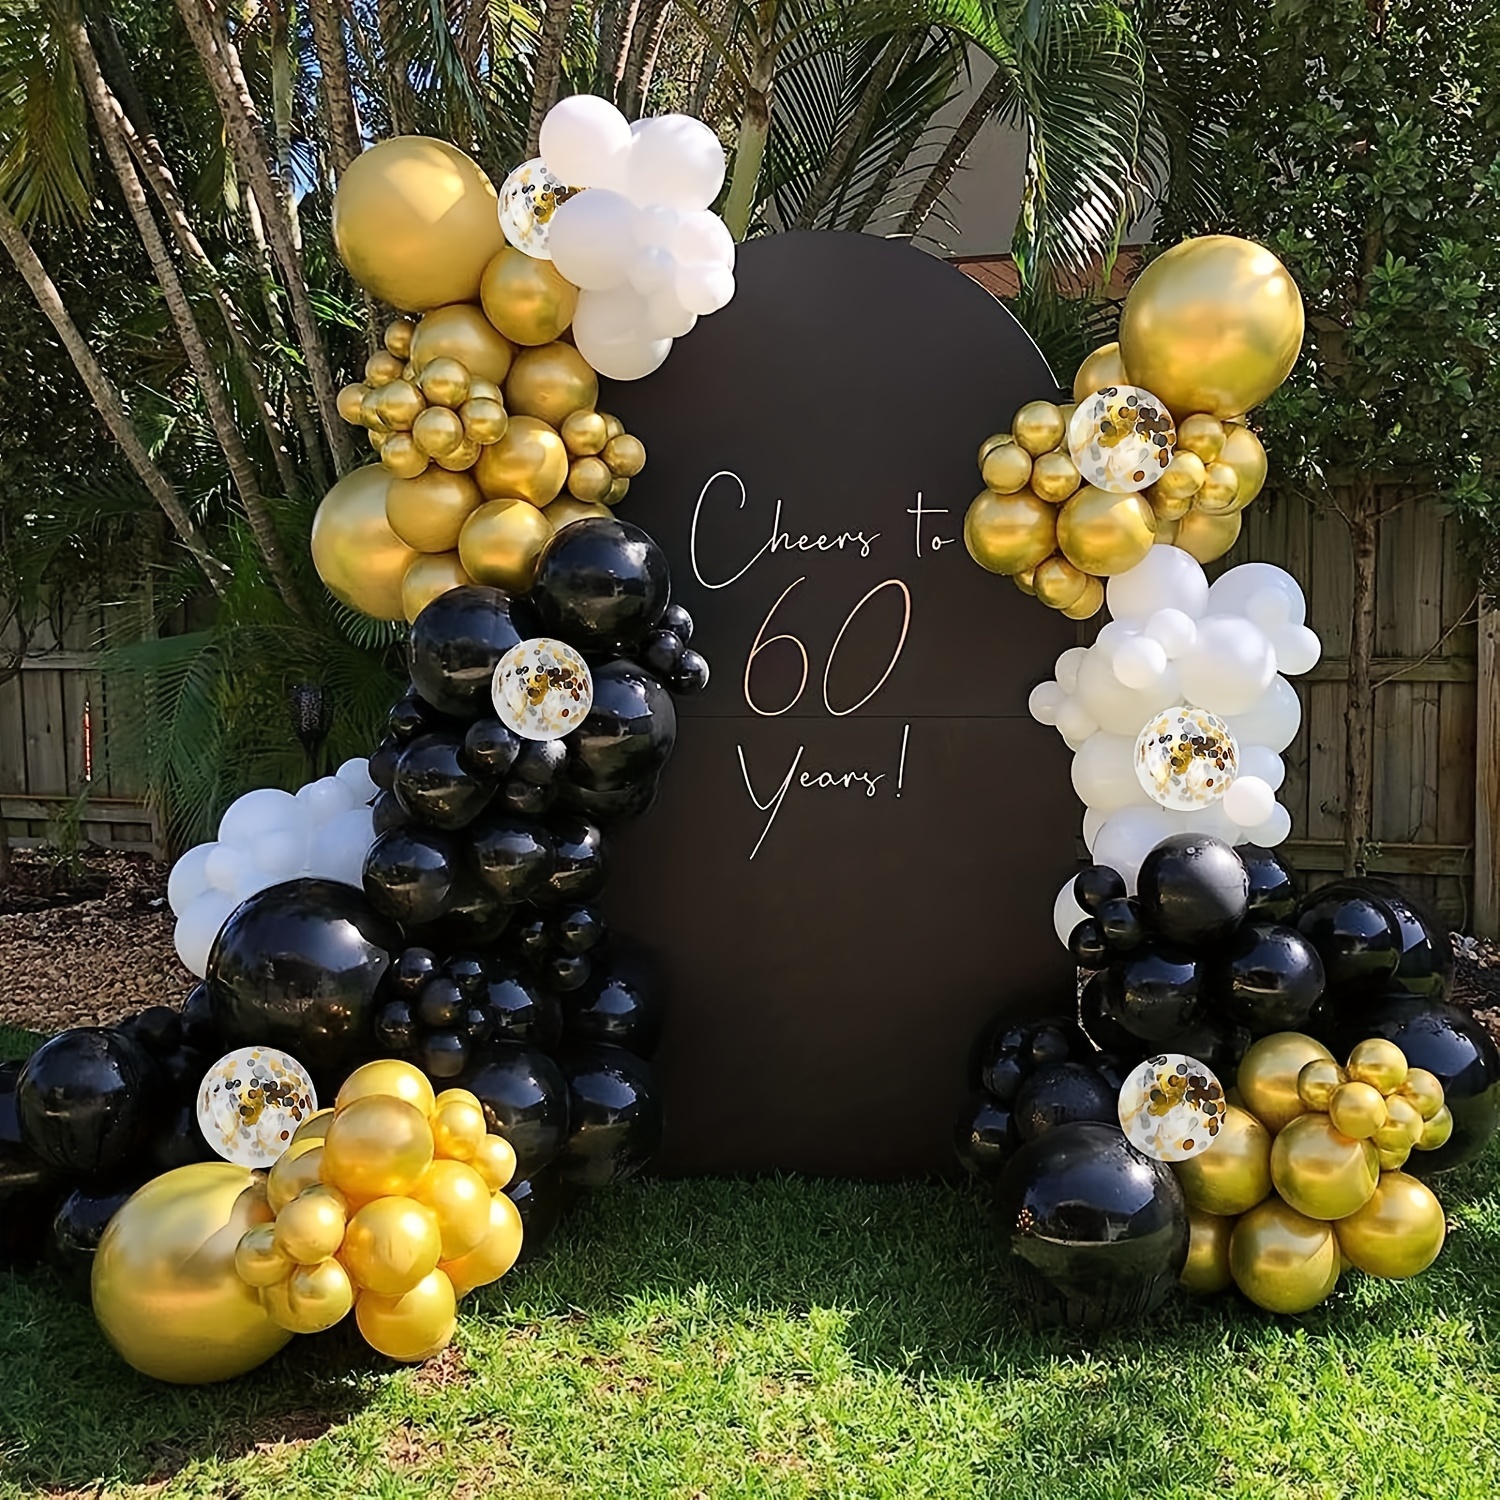 Moukiween Kit de guirnalda de globos negros y dorados, 115 globos negros y  dorados de 18, 10, 5 pulgadas, para graduación, cumpleaños, boda, baby